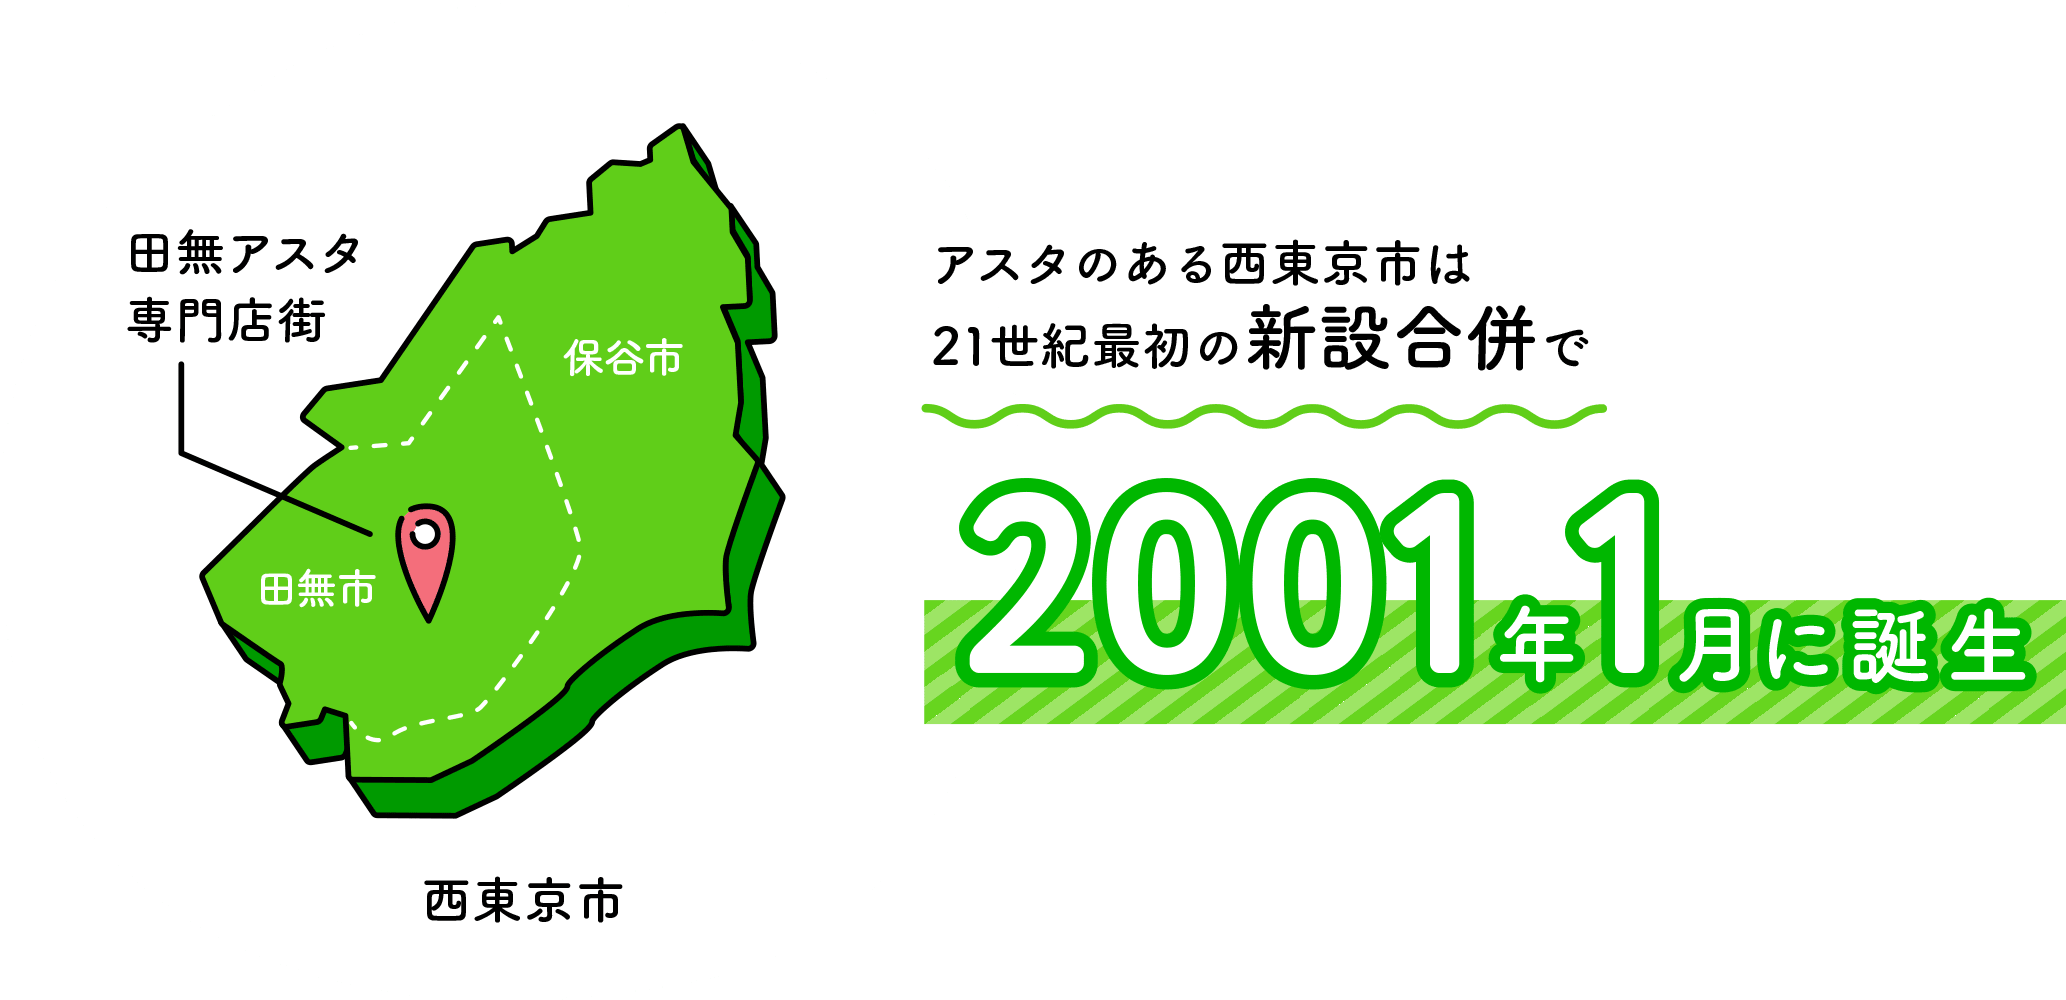 アスタのある西東京市は21世紀最初の新設合併で2001年1月に誕生